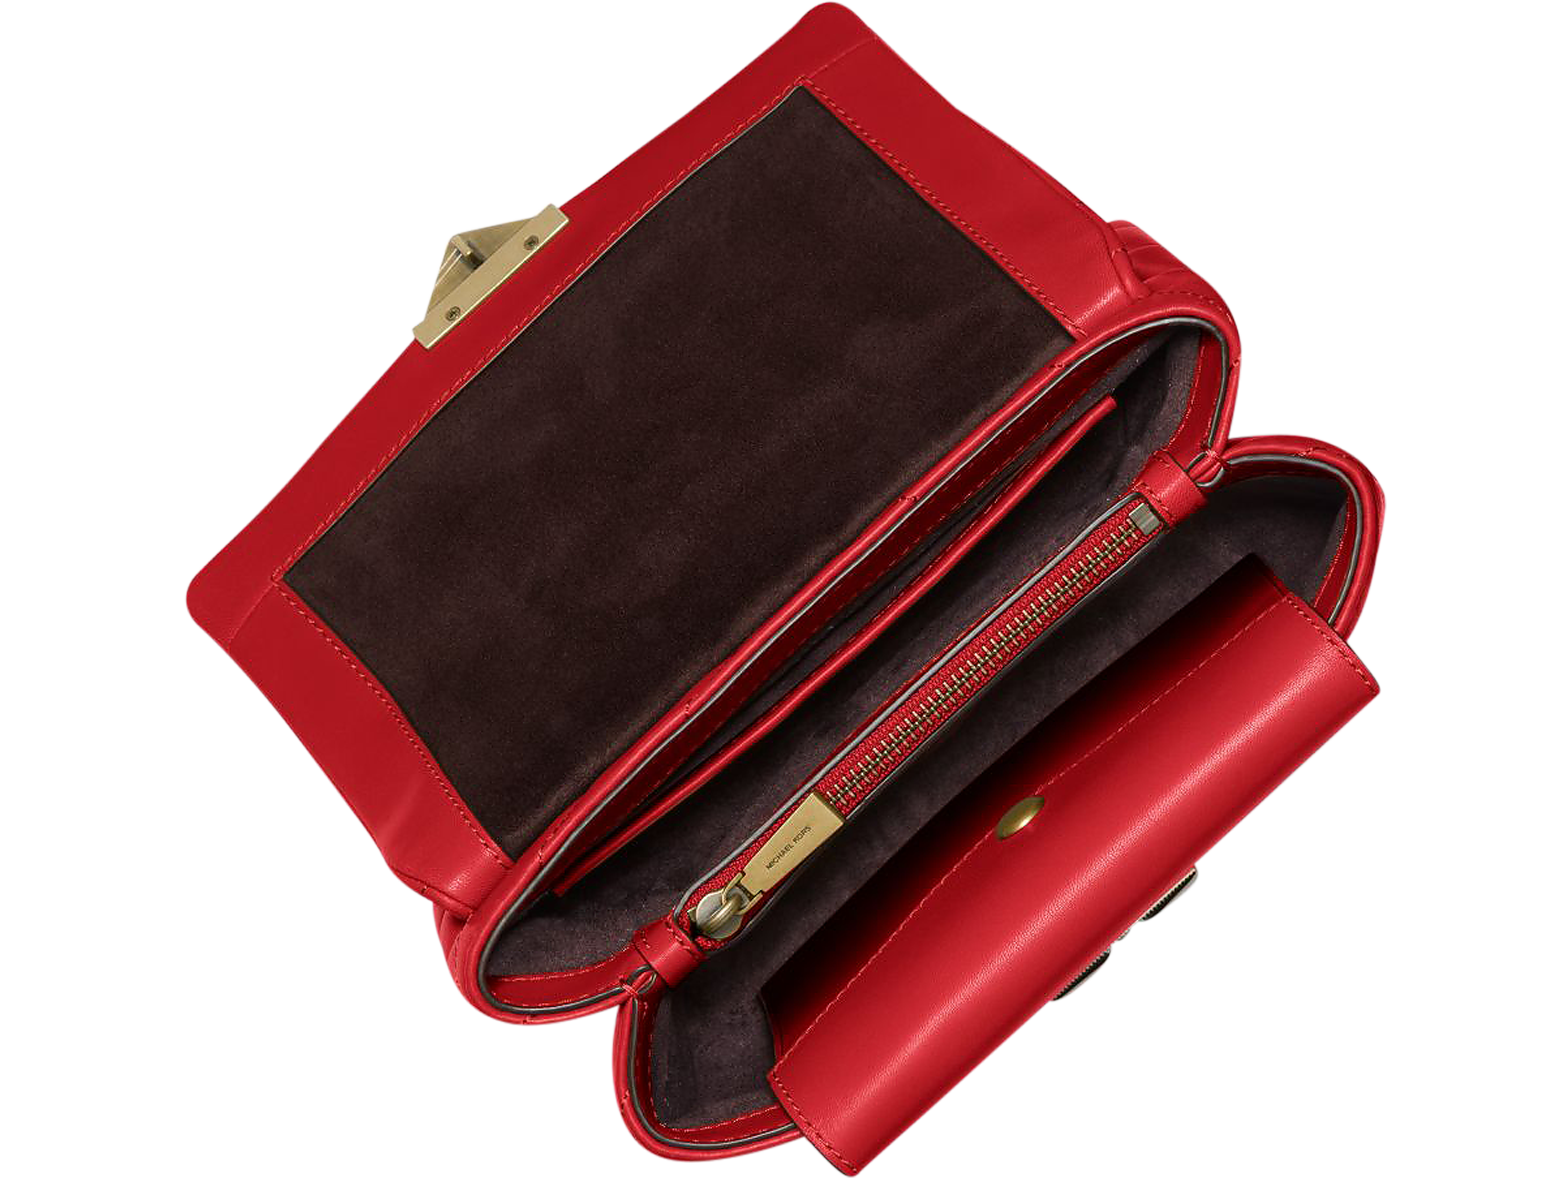 Michael Kors Cece Medium Leather Shoulder Bag in Red